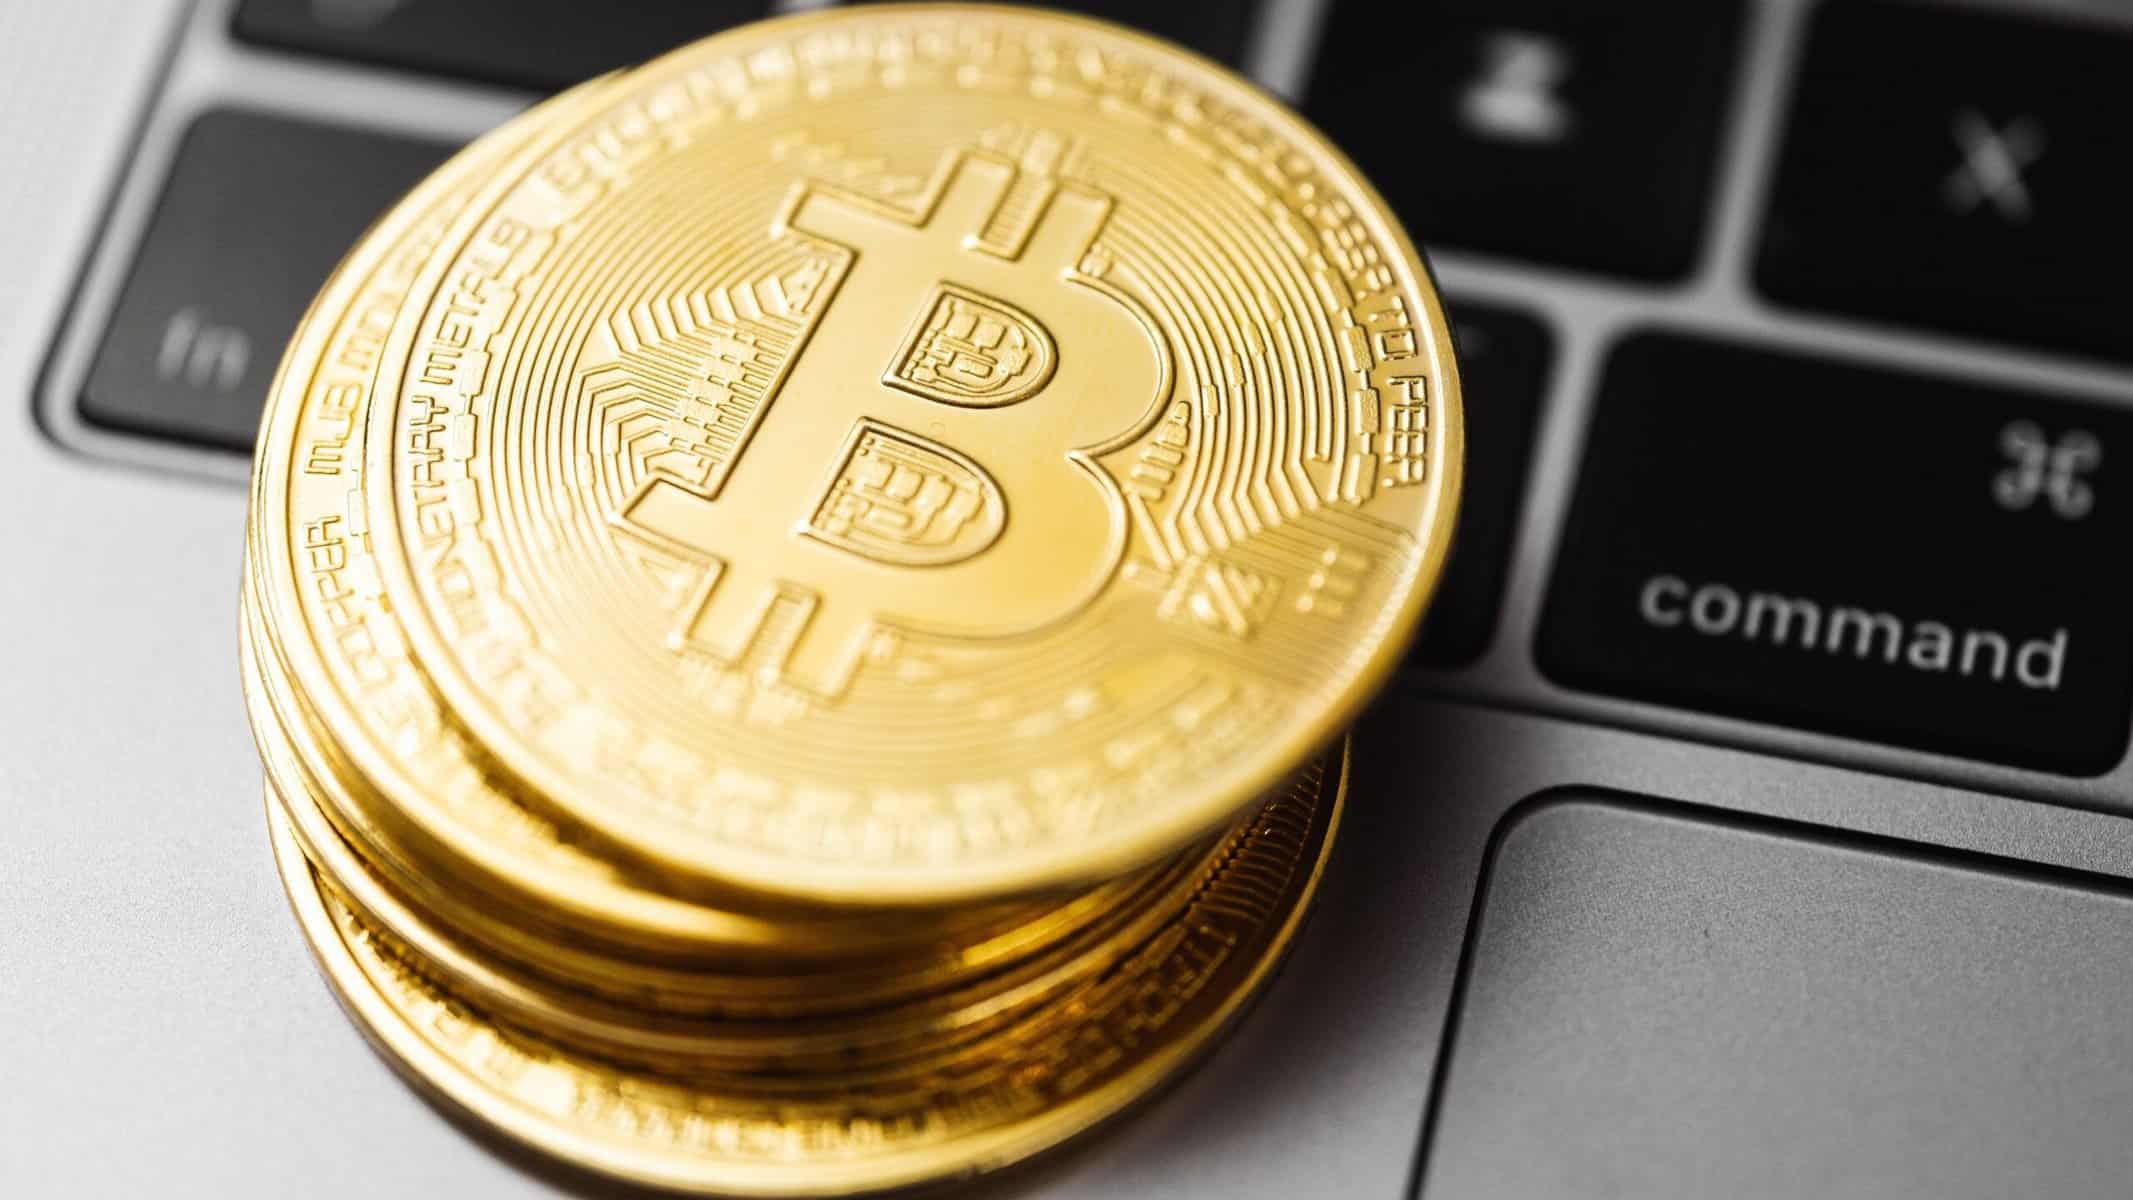 Bitcoin Weekly News